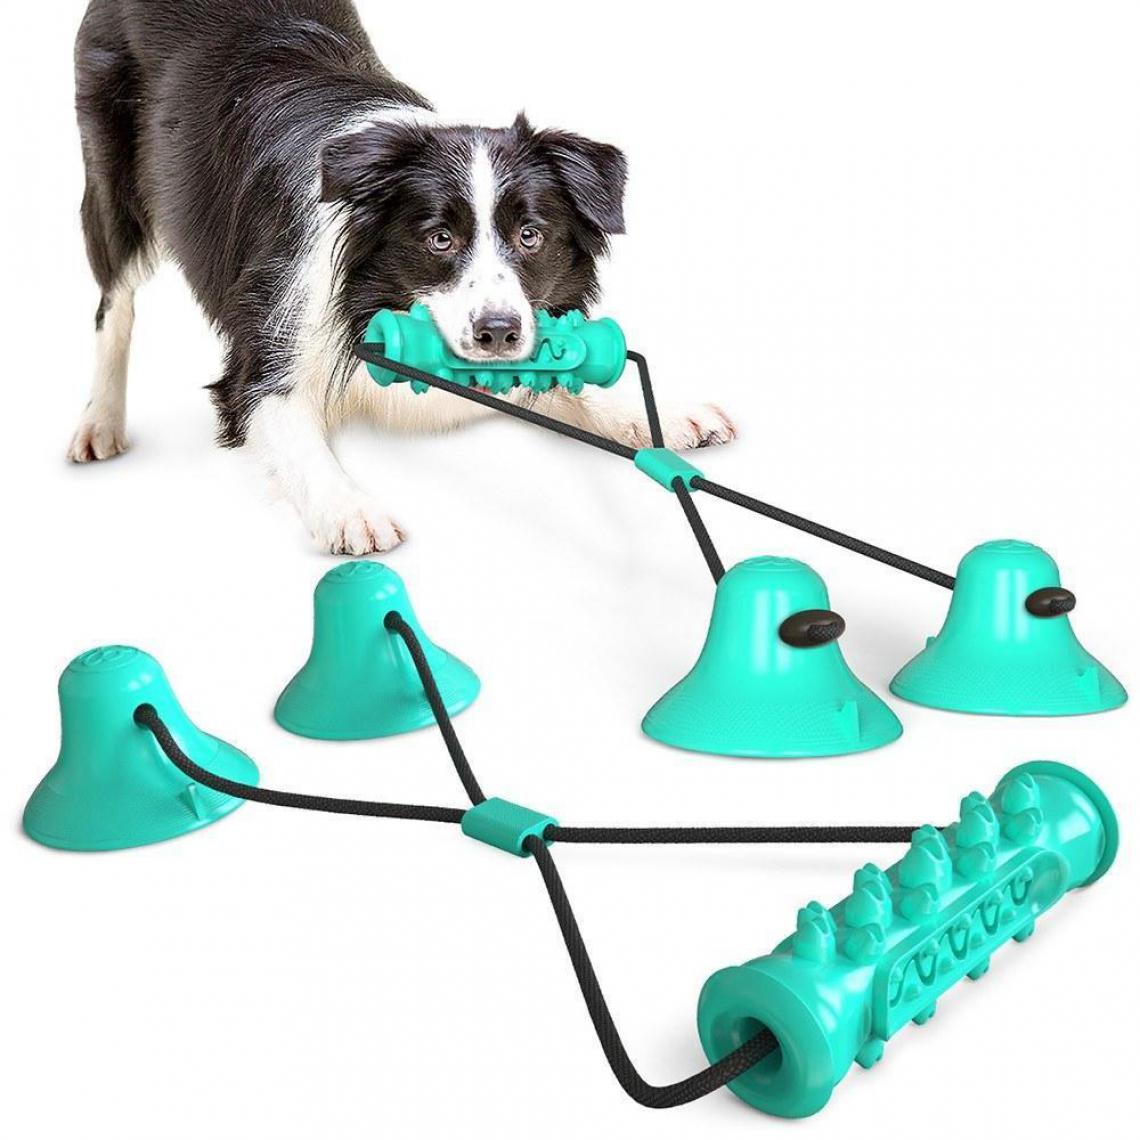 Justgreenbox - Chien Molar Bite Chew Toy Corde Pull Interactive avec Ventouse pour Tirer le Nettoyage des Dents à Mâcher, Bleu - Jouet pour chien